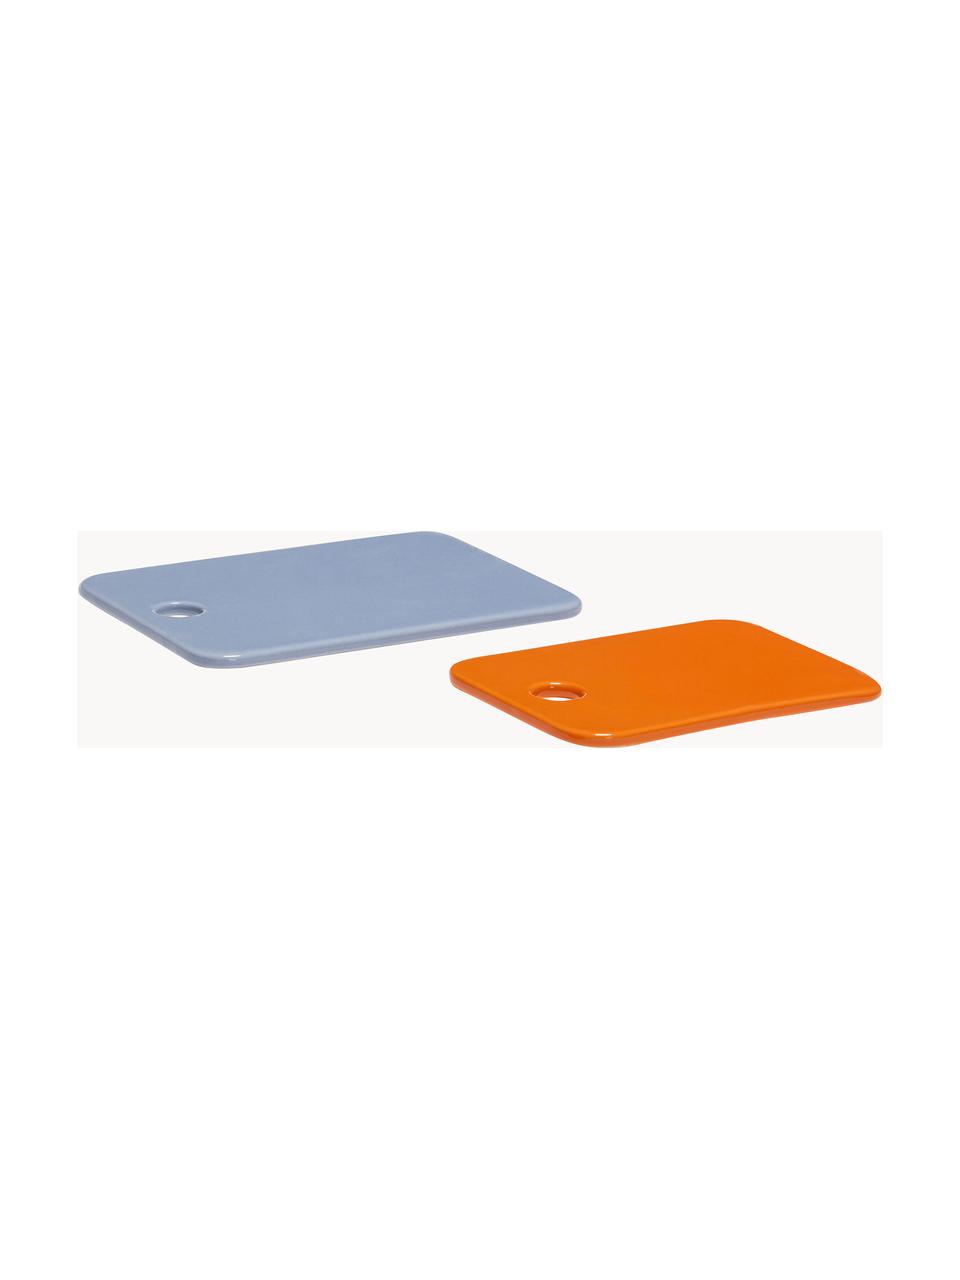 Handgefertigte Servierplatten Amare, 2er-Set, Steinpulver, Hellblau, Orange, Set mit verschiedenen Grössen